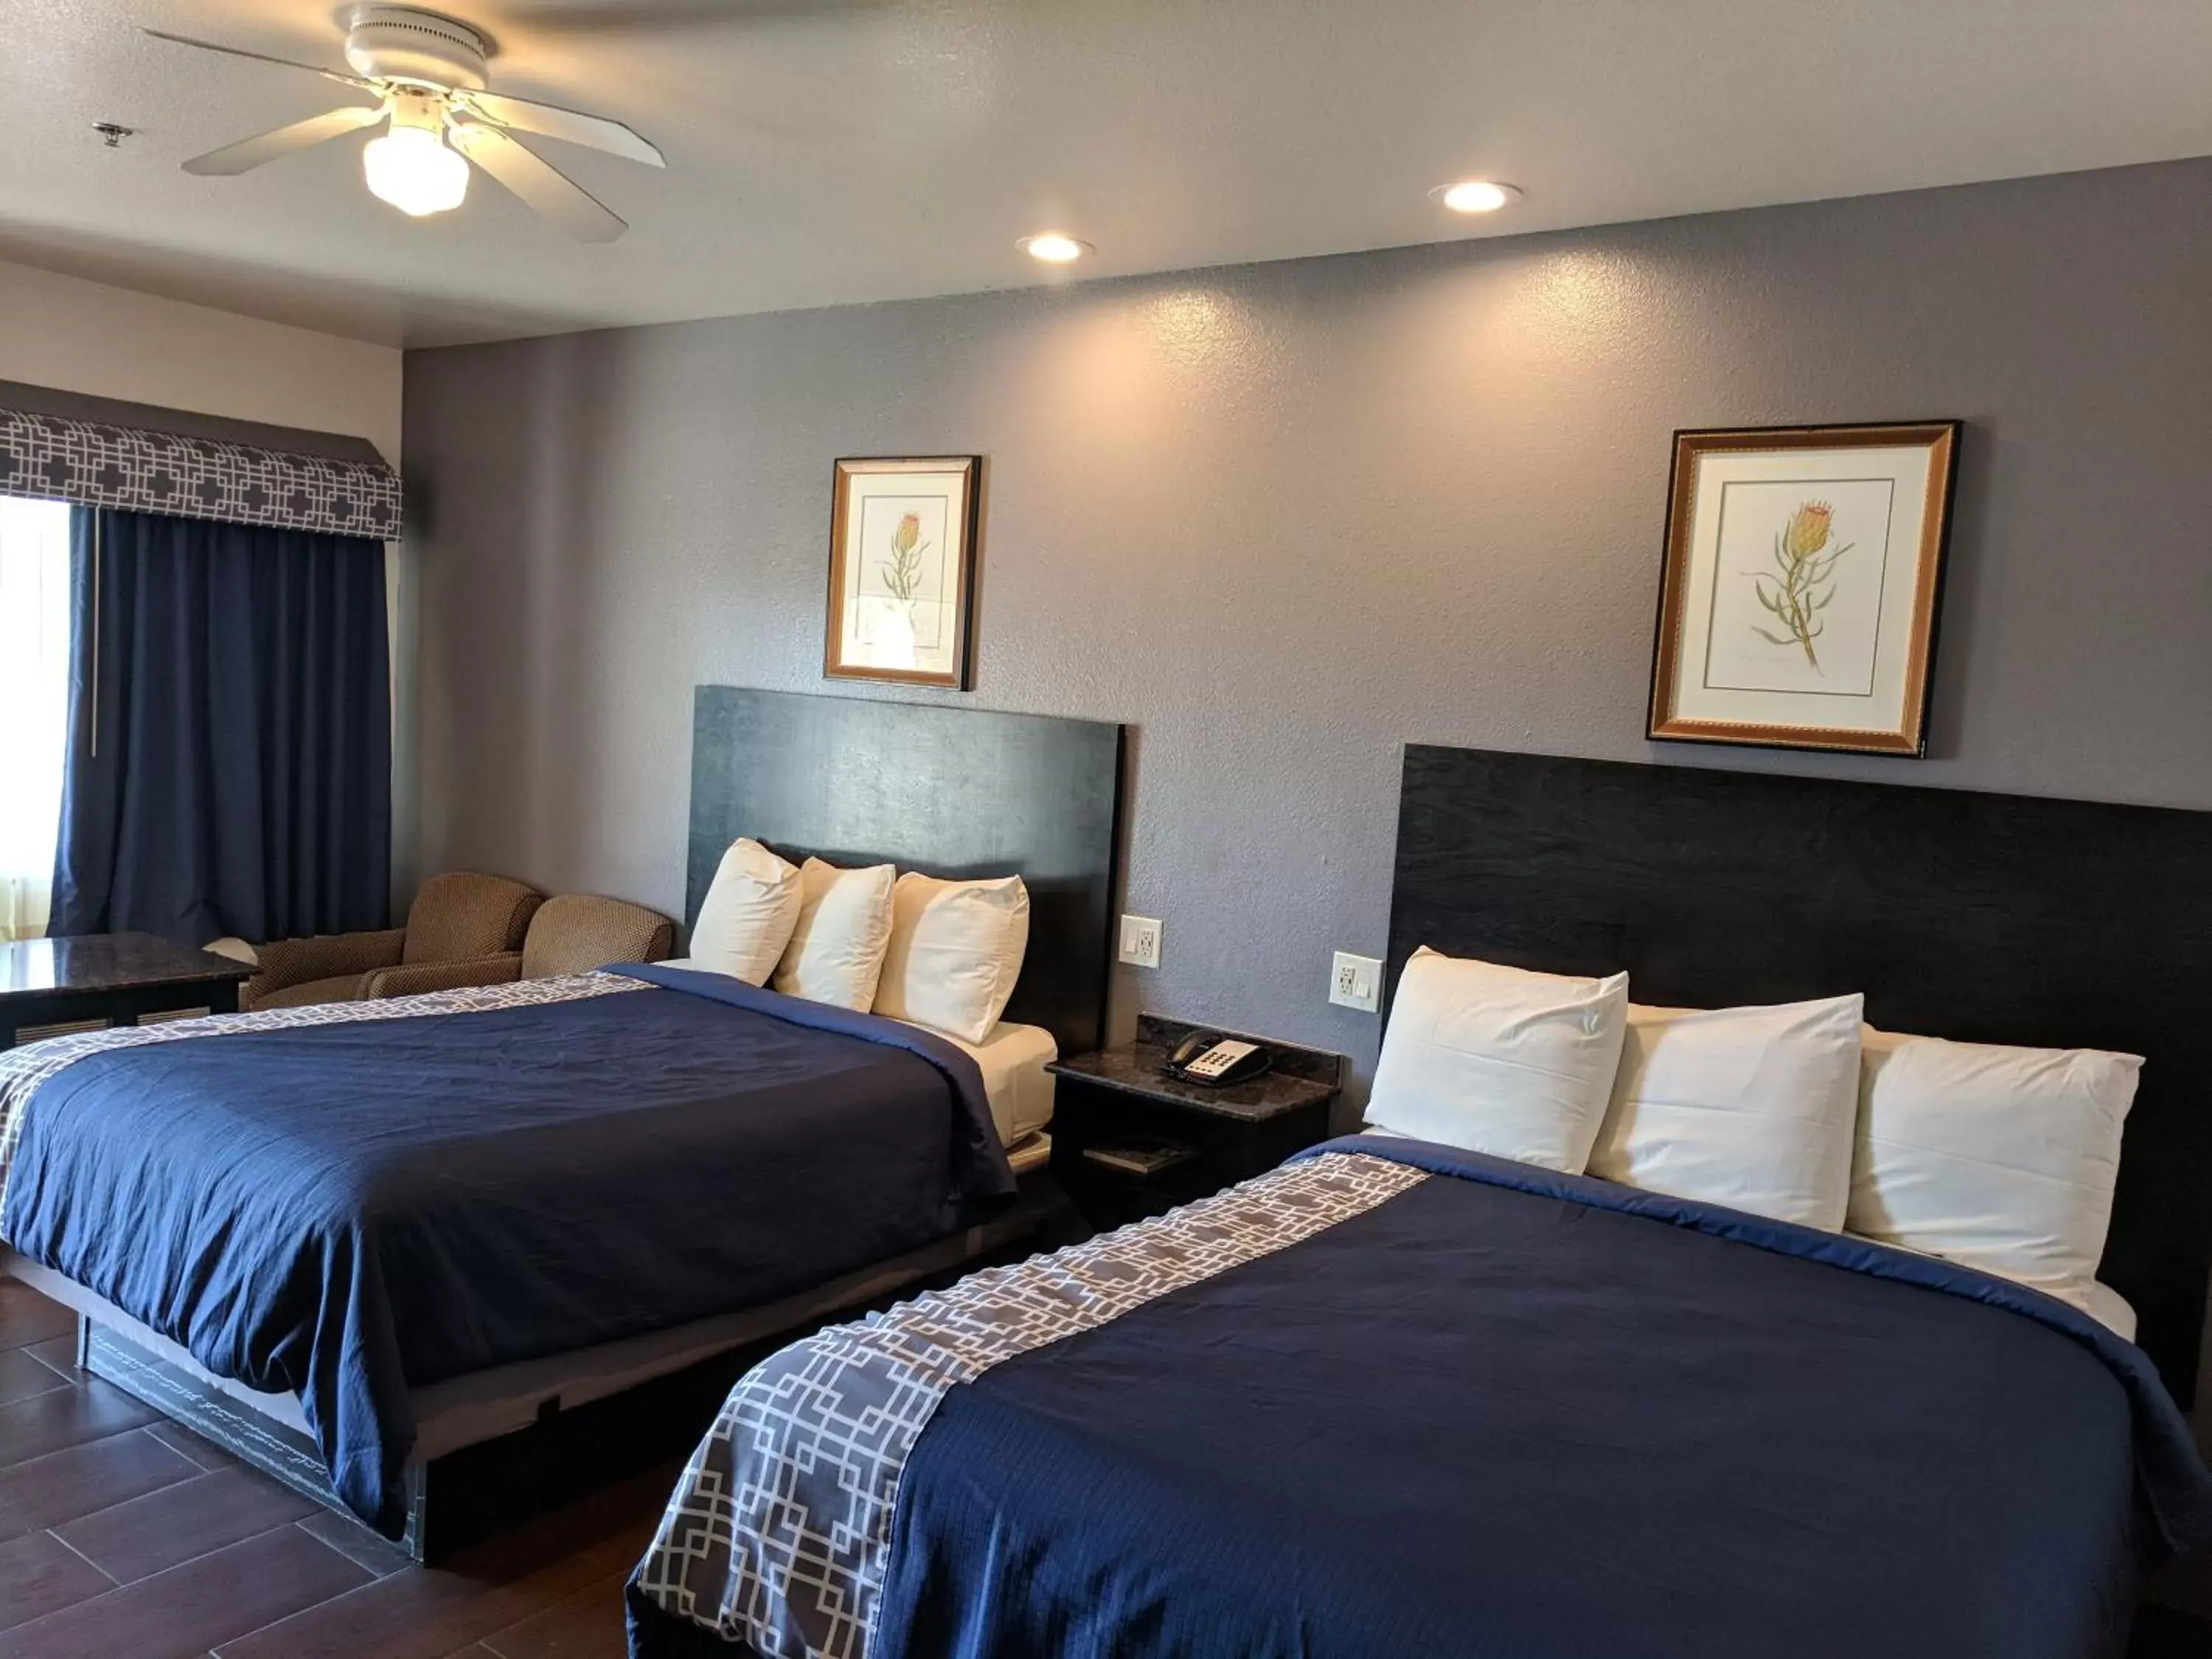 Bedroom, Bed in Americas Best Value Inn - Brownsville